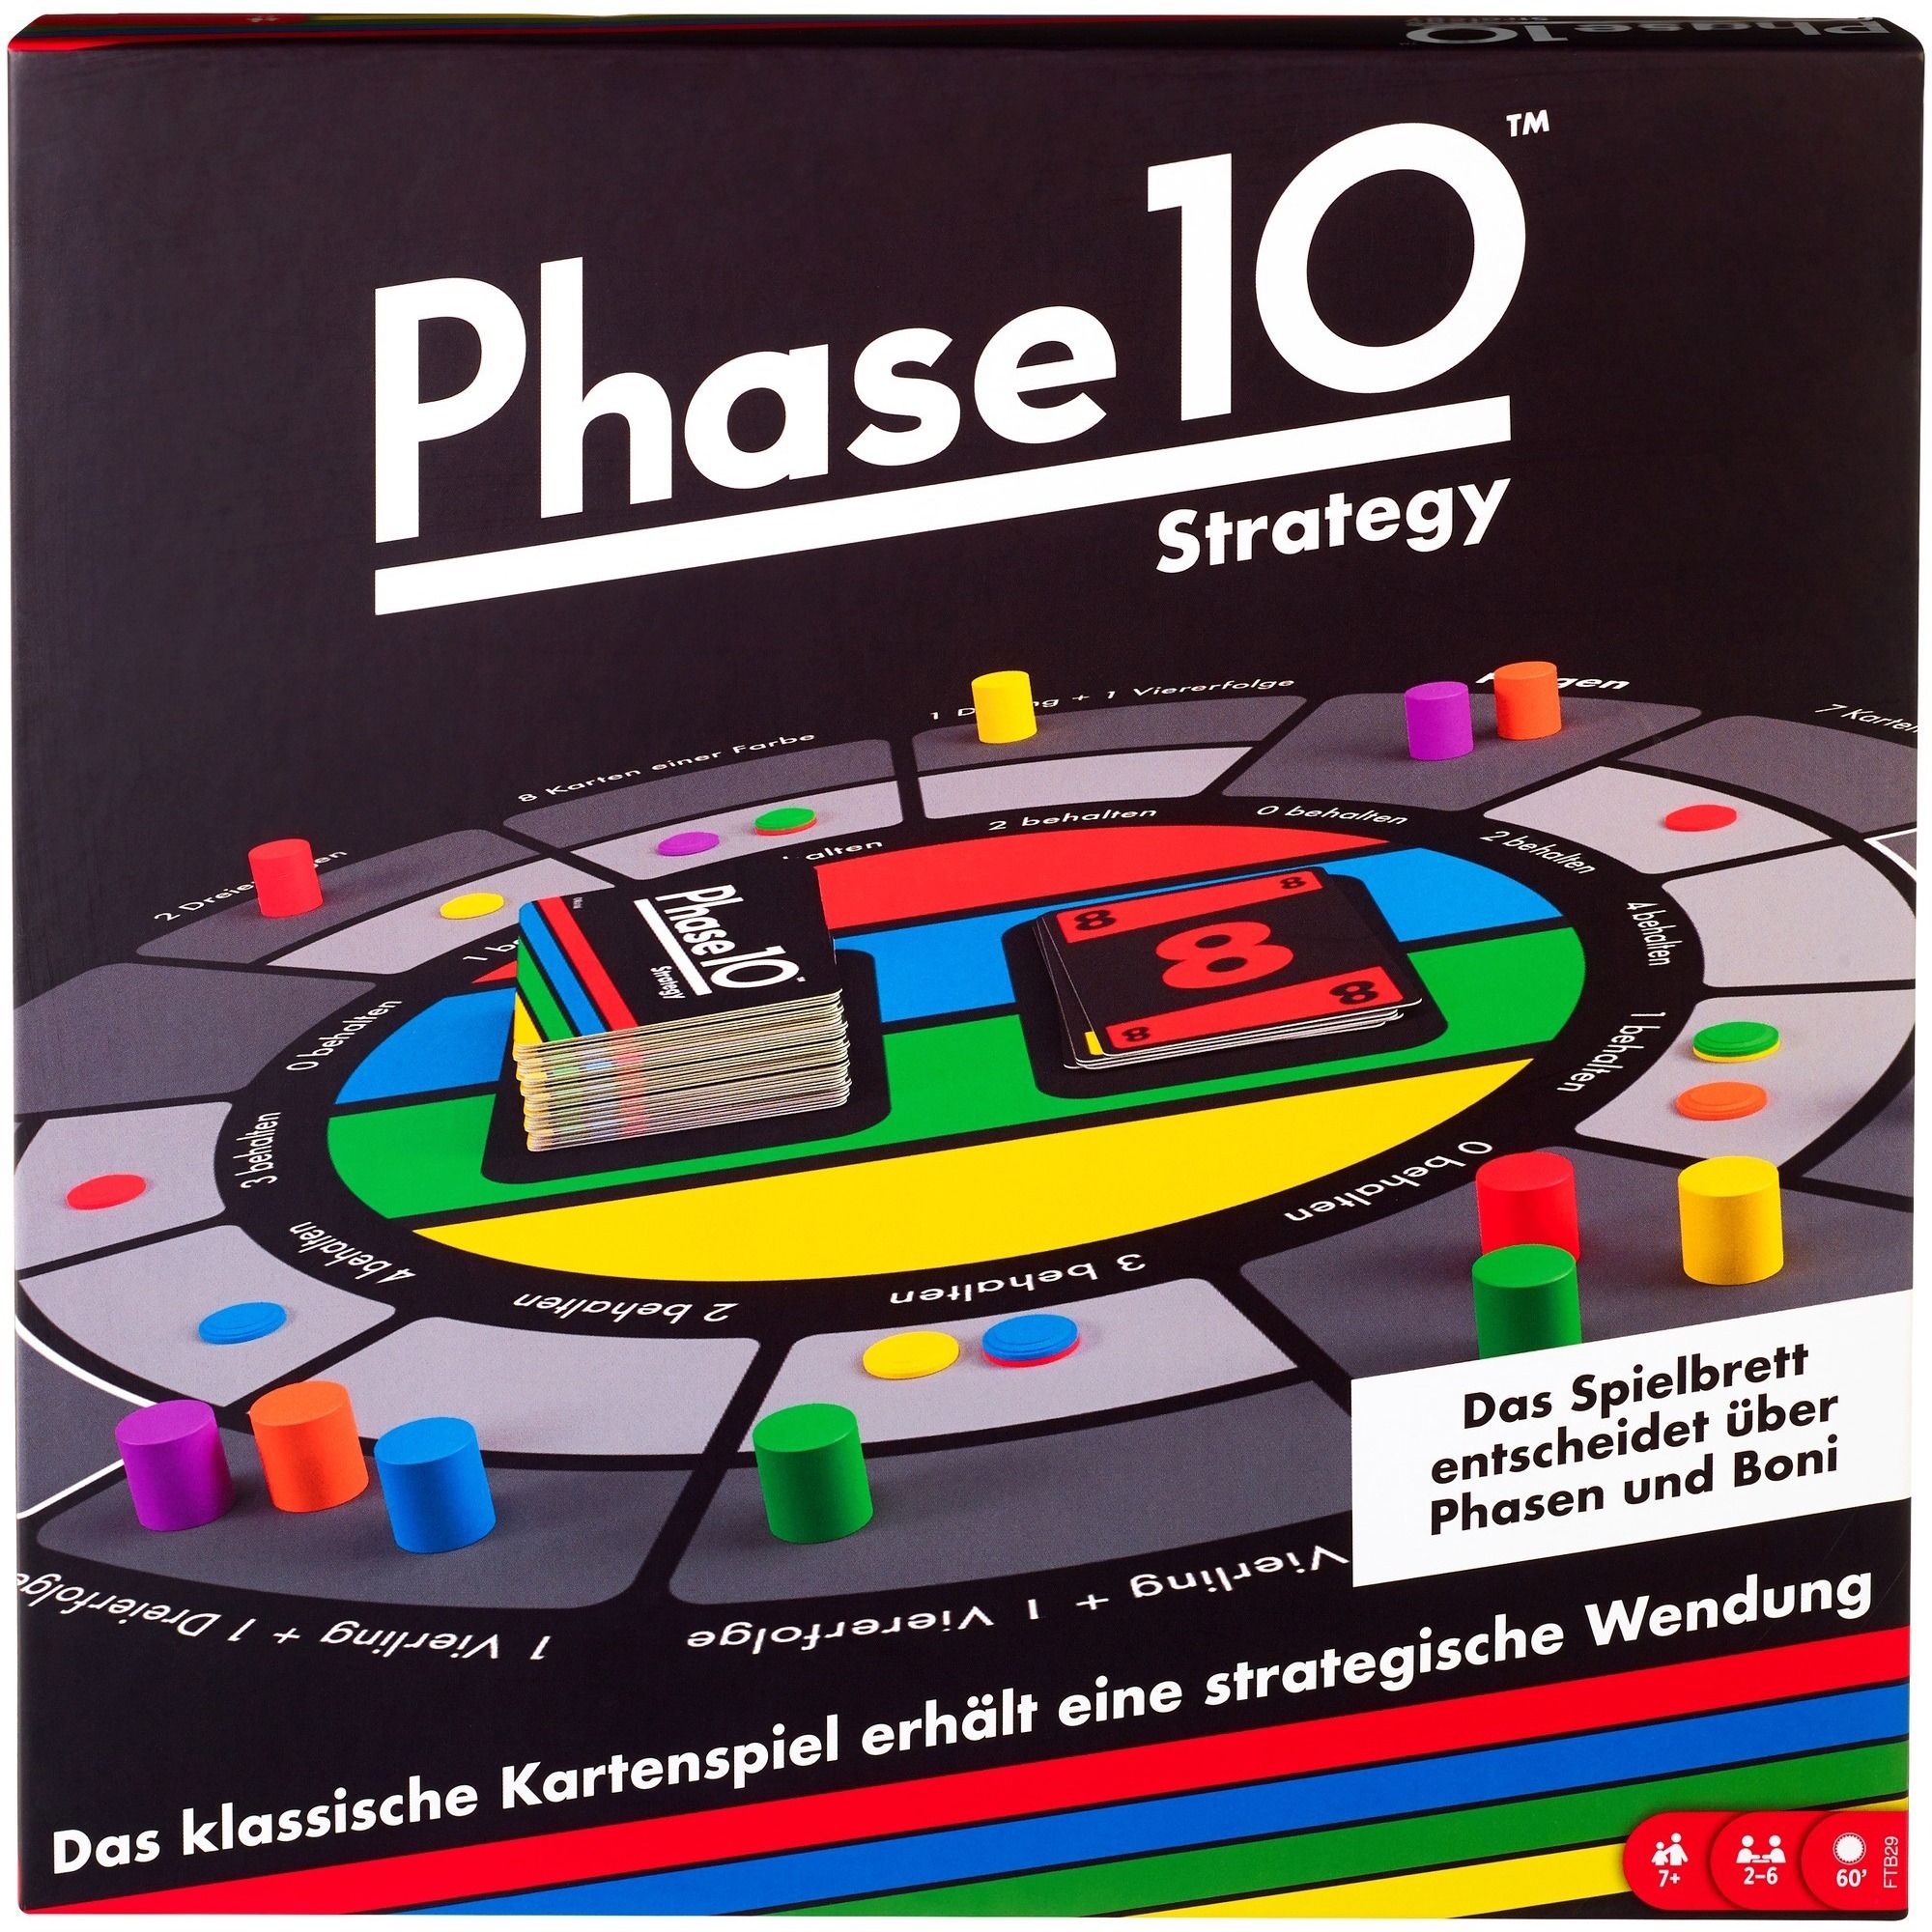 Image of Alternate - Phase 10 Strategy, Brettspiel online einkaufen bei Alternate